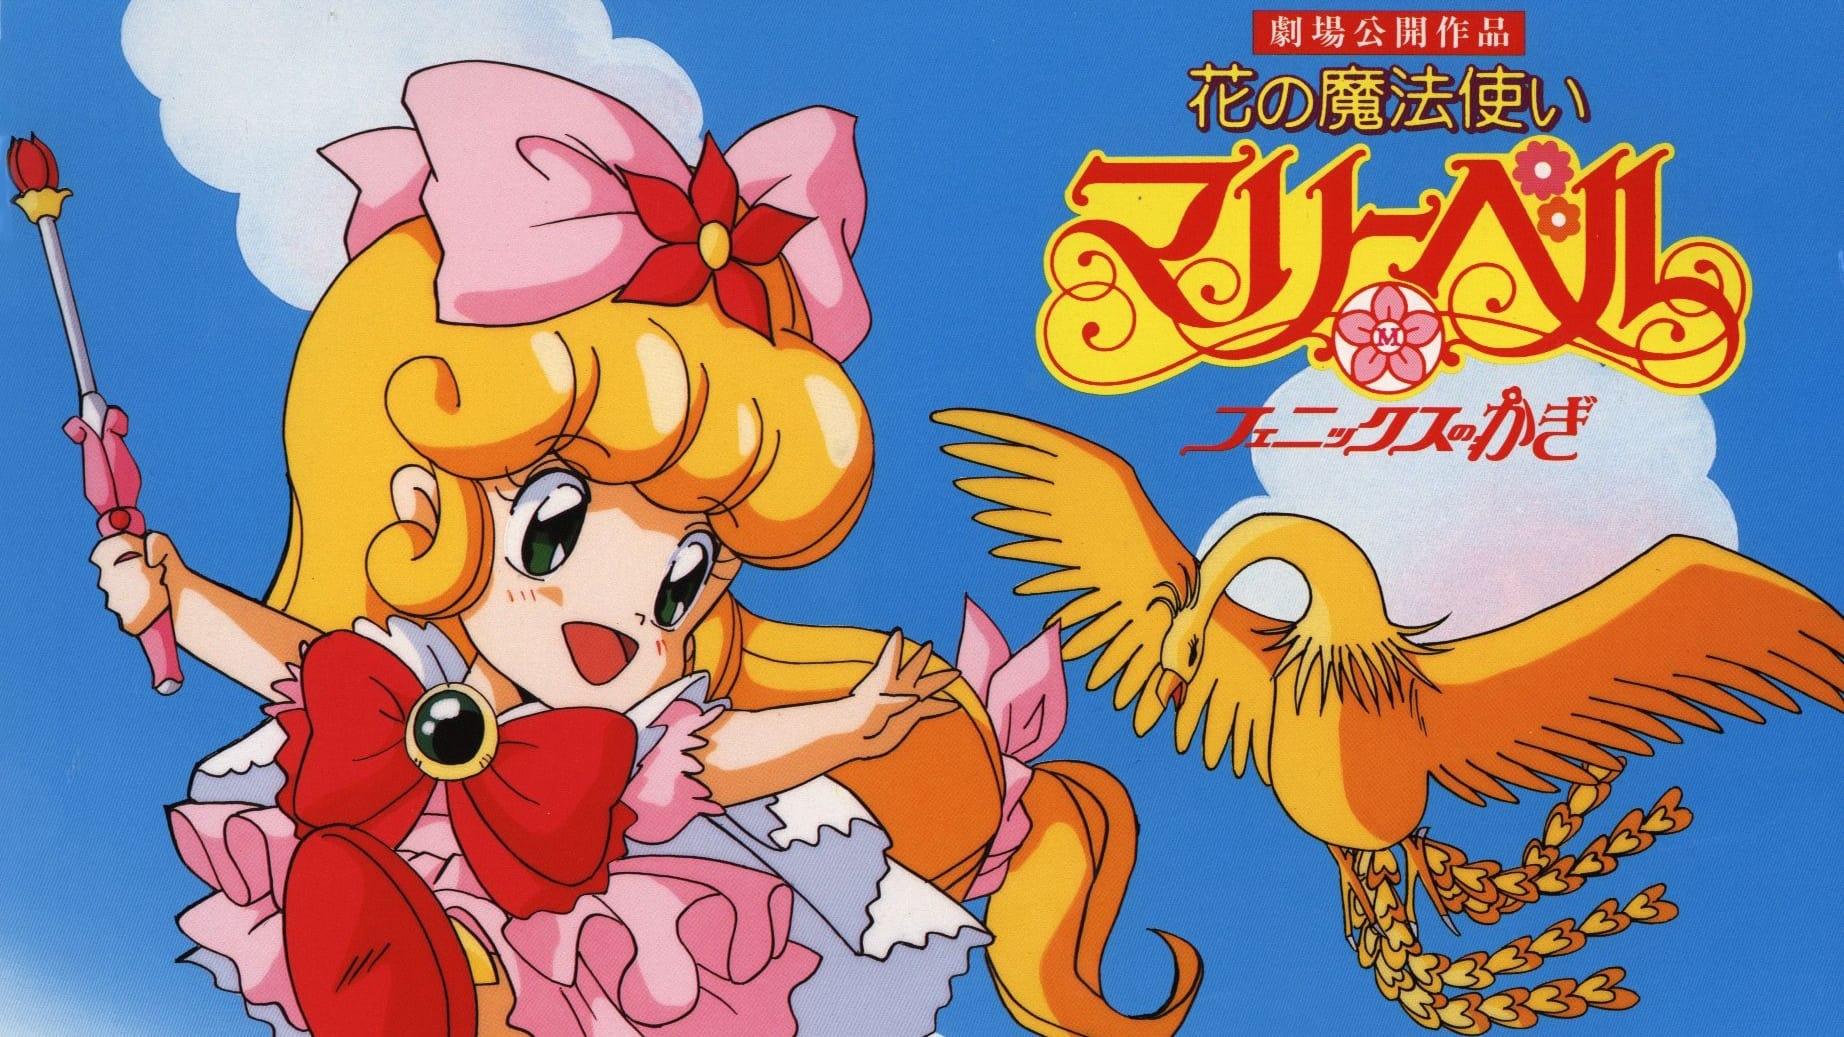 Hana no Mahou Tsukai Mary Bell: Phoenix no Kagi backdrop